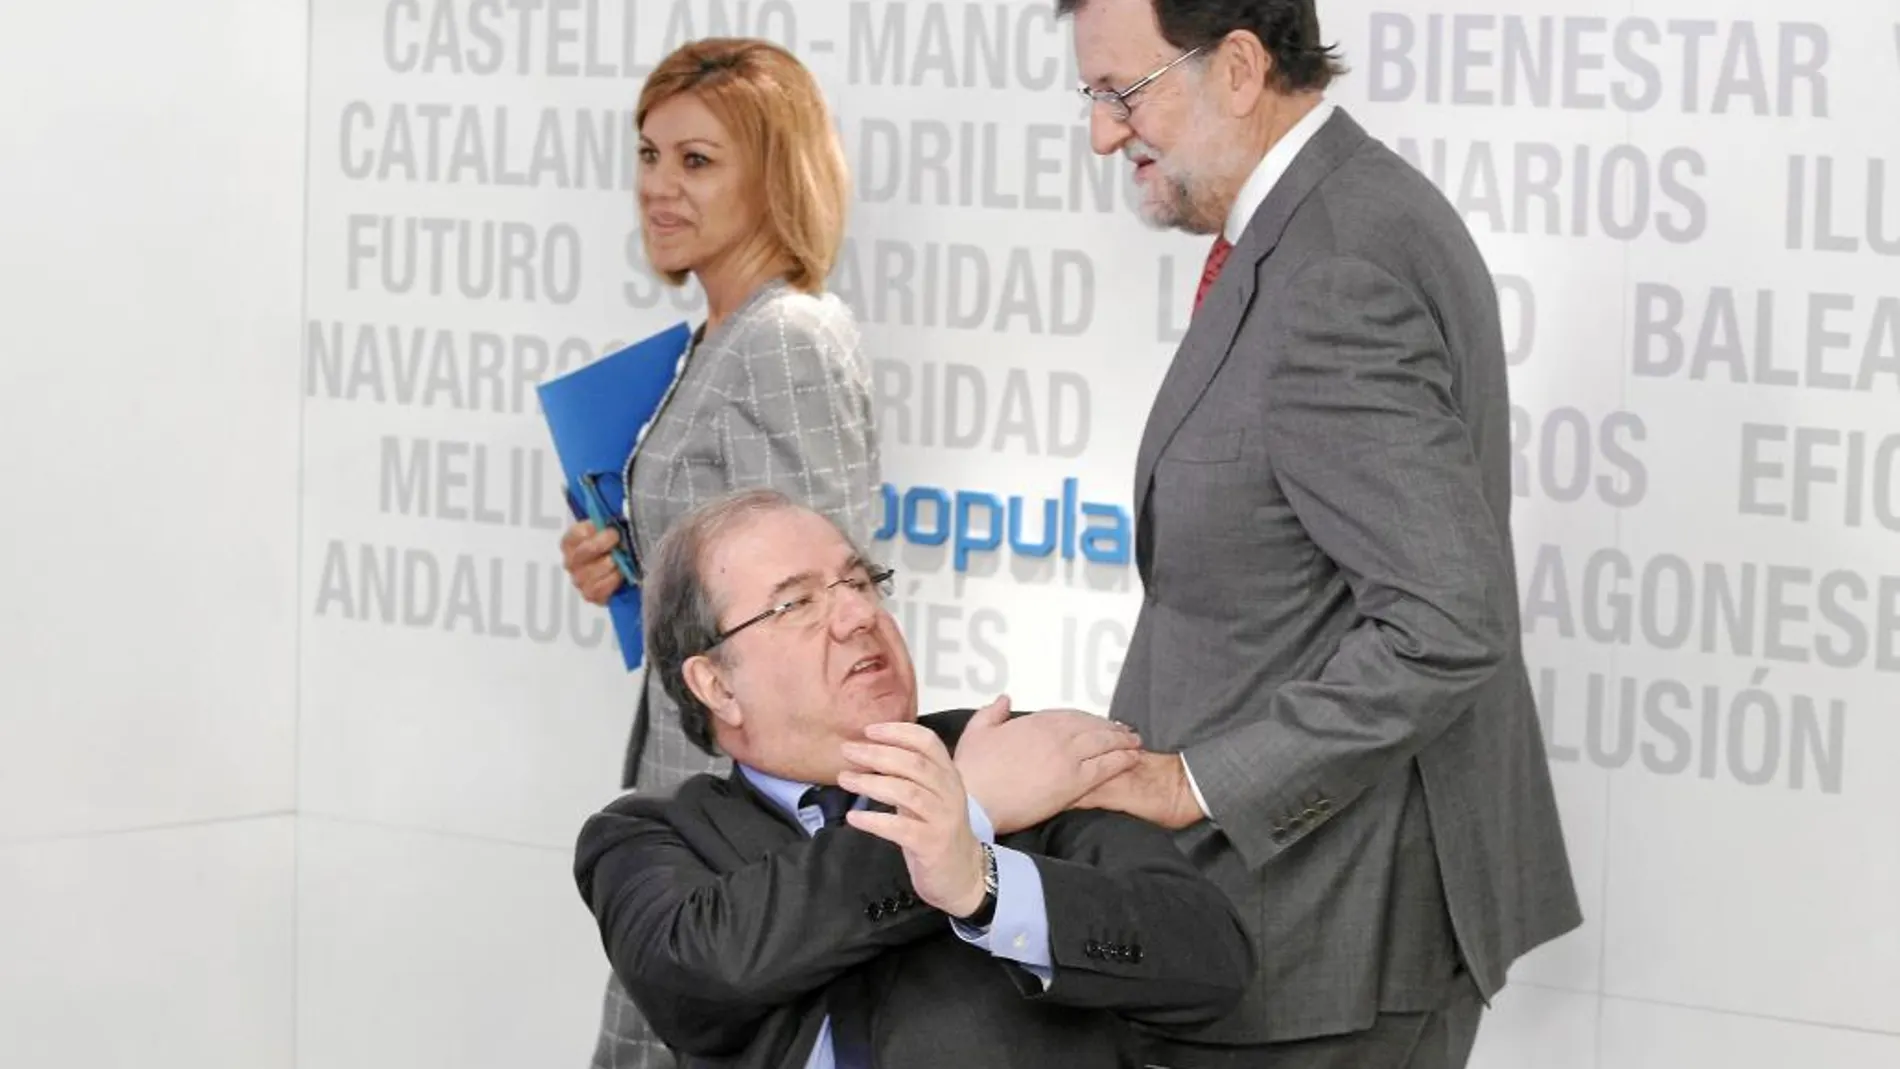 El presidente Herrera saluda a Rajoy, en presencia de Cospedal, al inicio del Comité Ejecutivo Nacional del PP